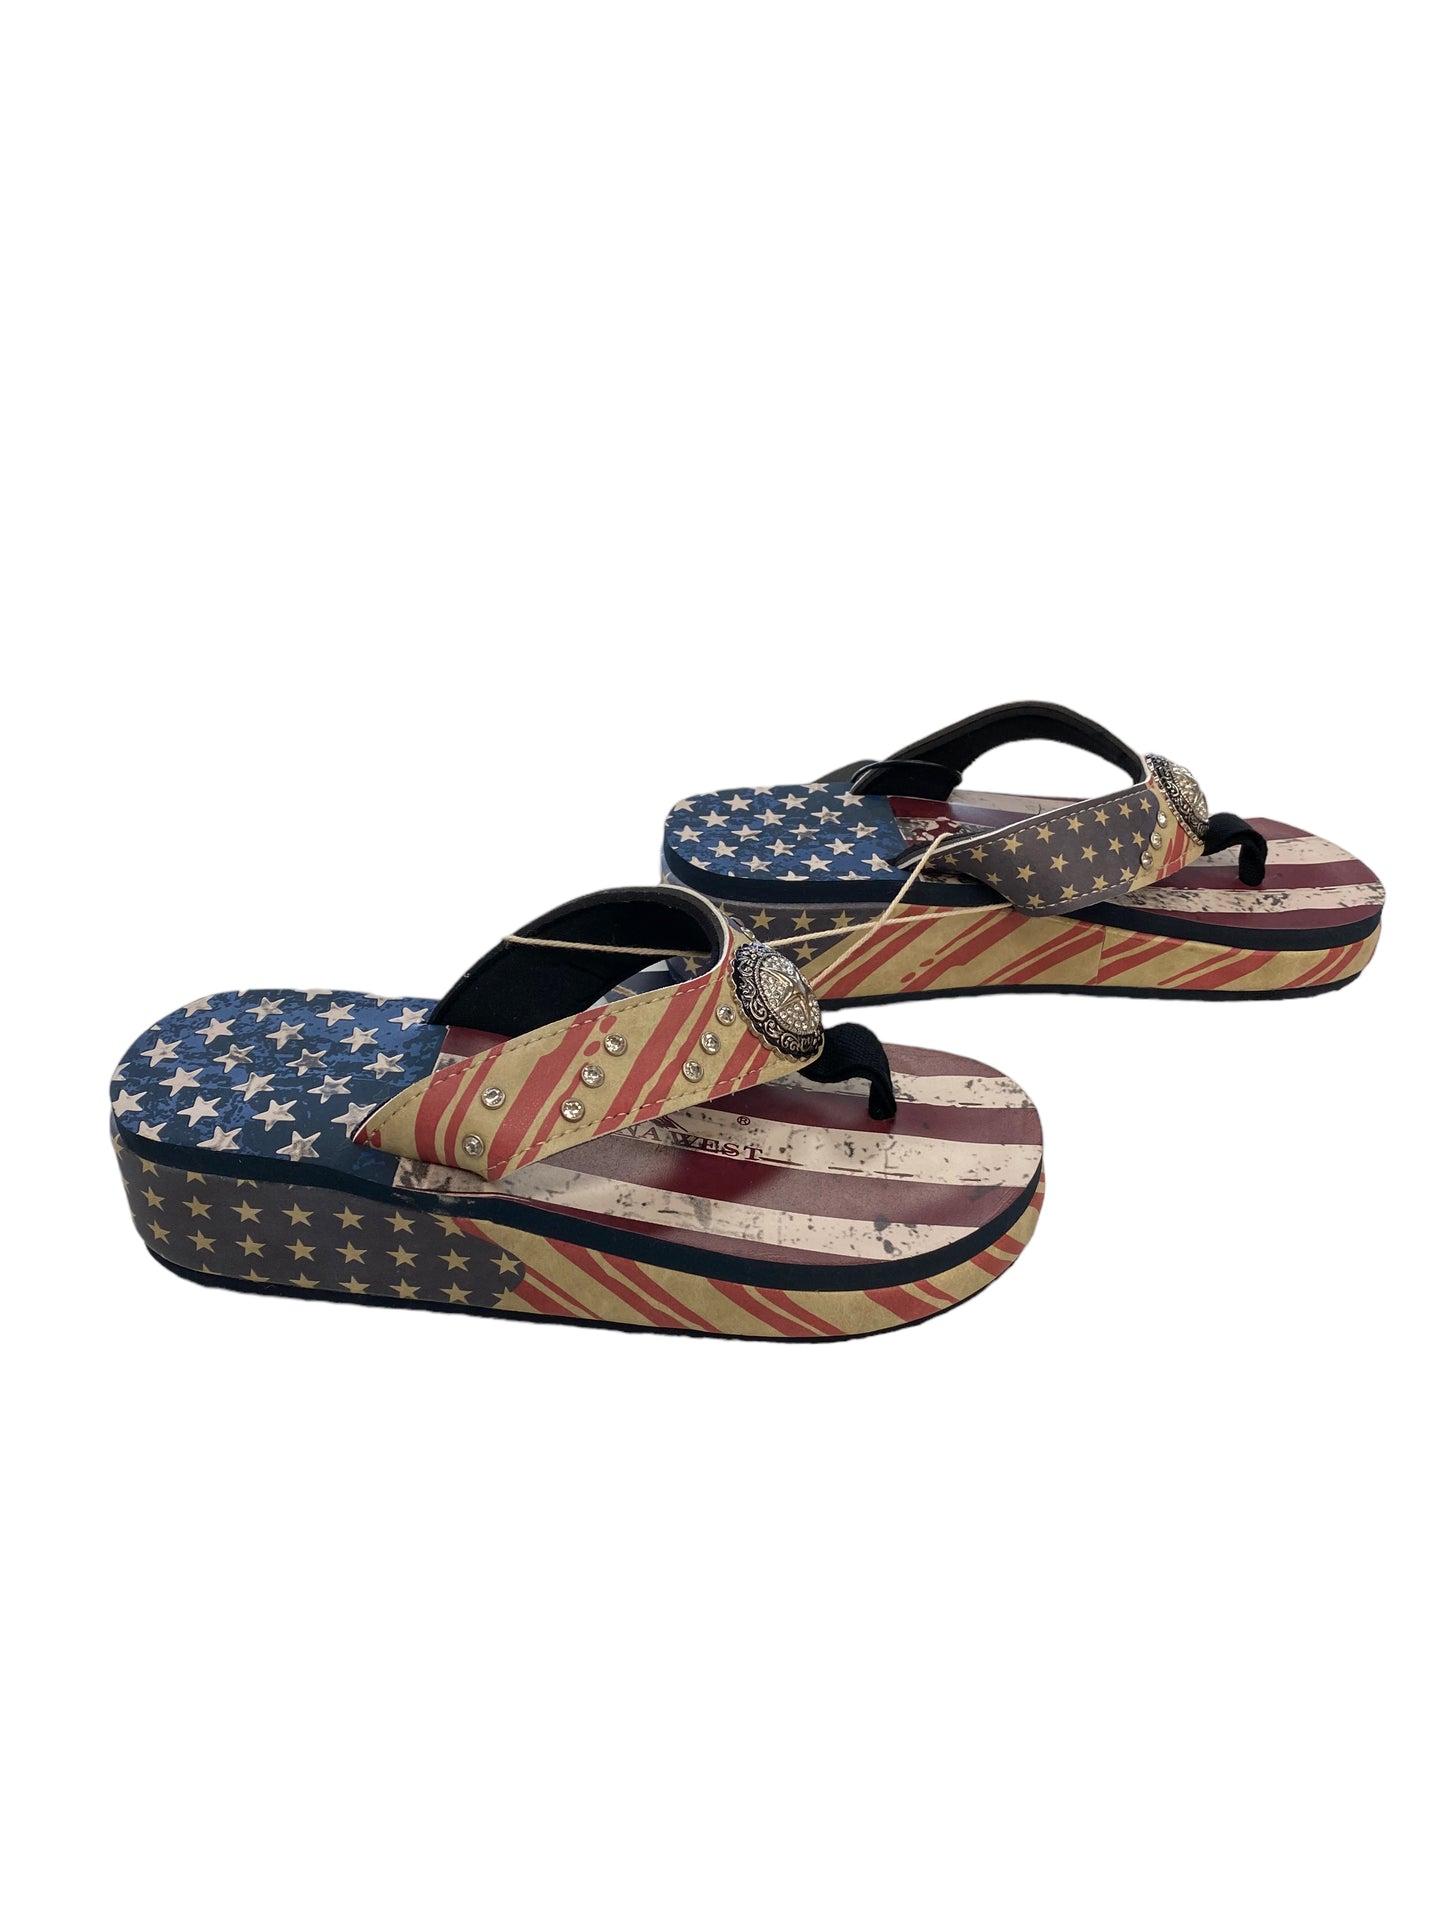 Multi-colored Sandals Flip Flops Cmc, Size 7